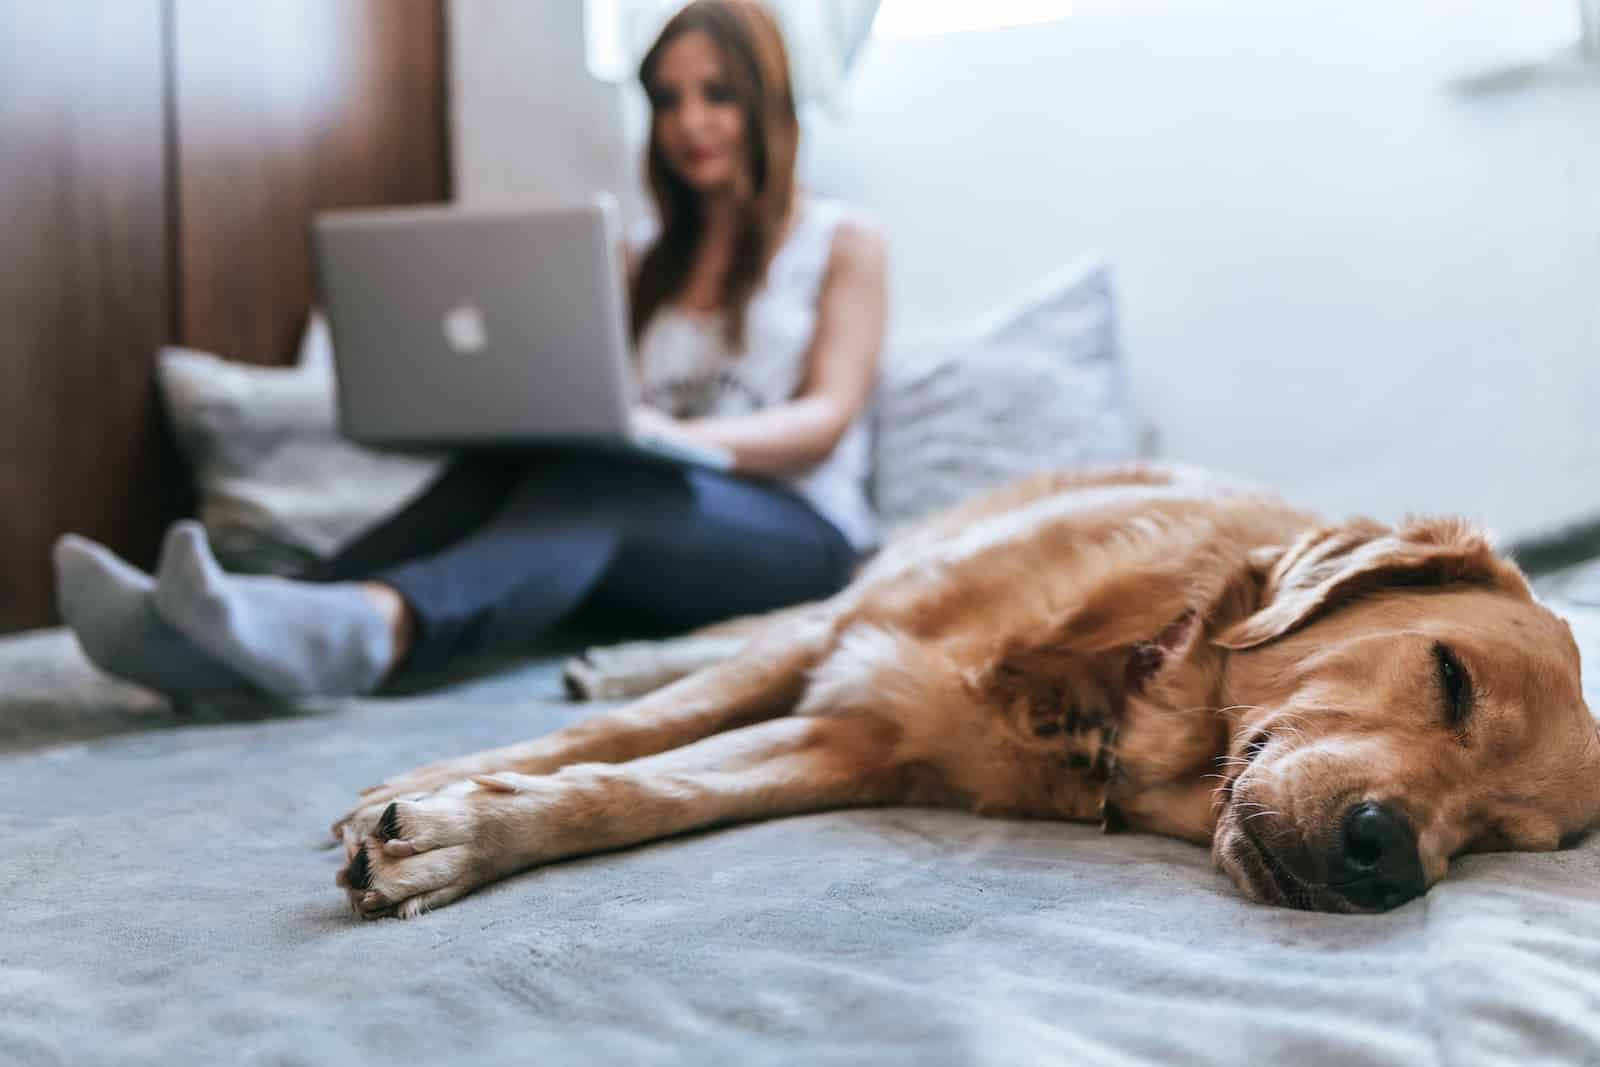 goldener Hund liegt schläftig auf einer Couch auf der in Hintergrund eine junge Frau an einem silbernen Laptop auf ihrem Schoß sitzend arbeitet